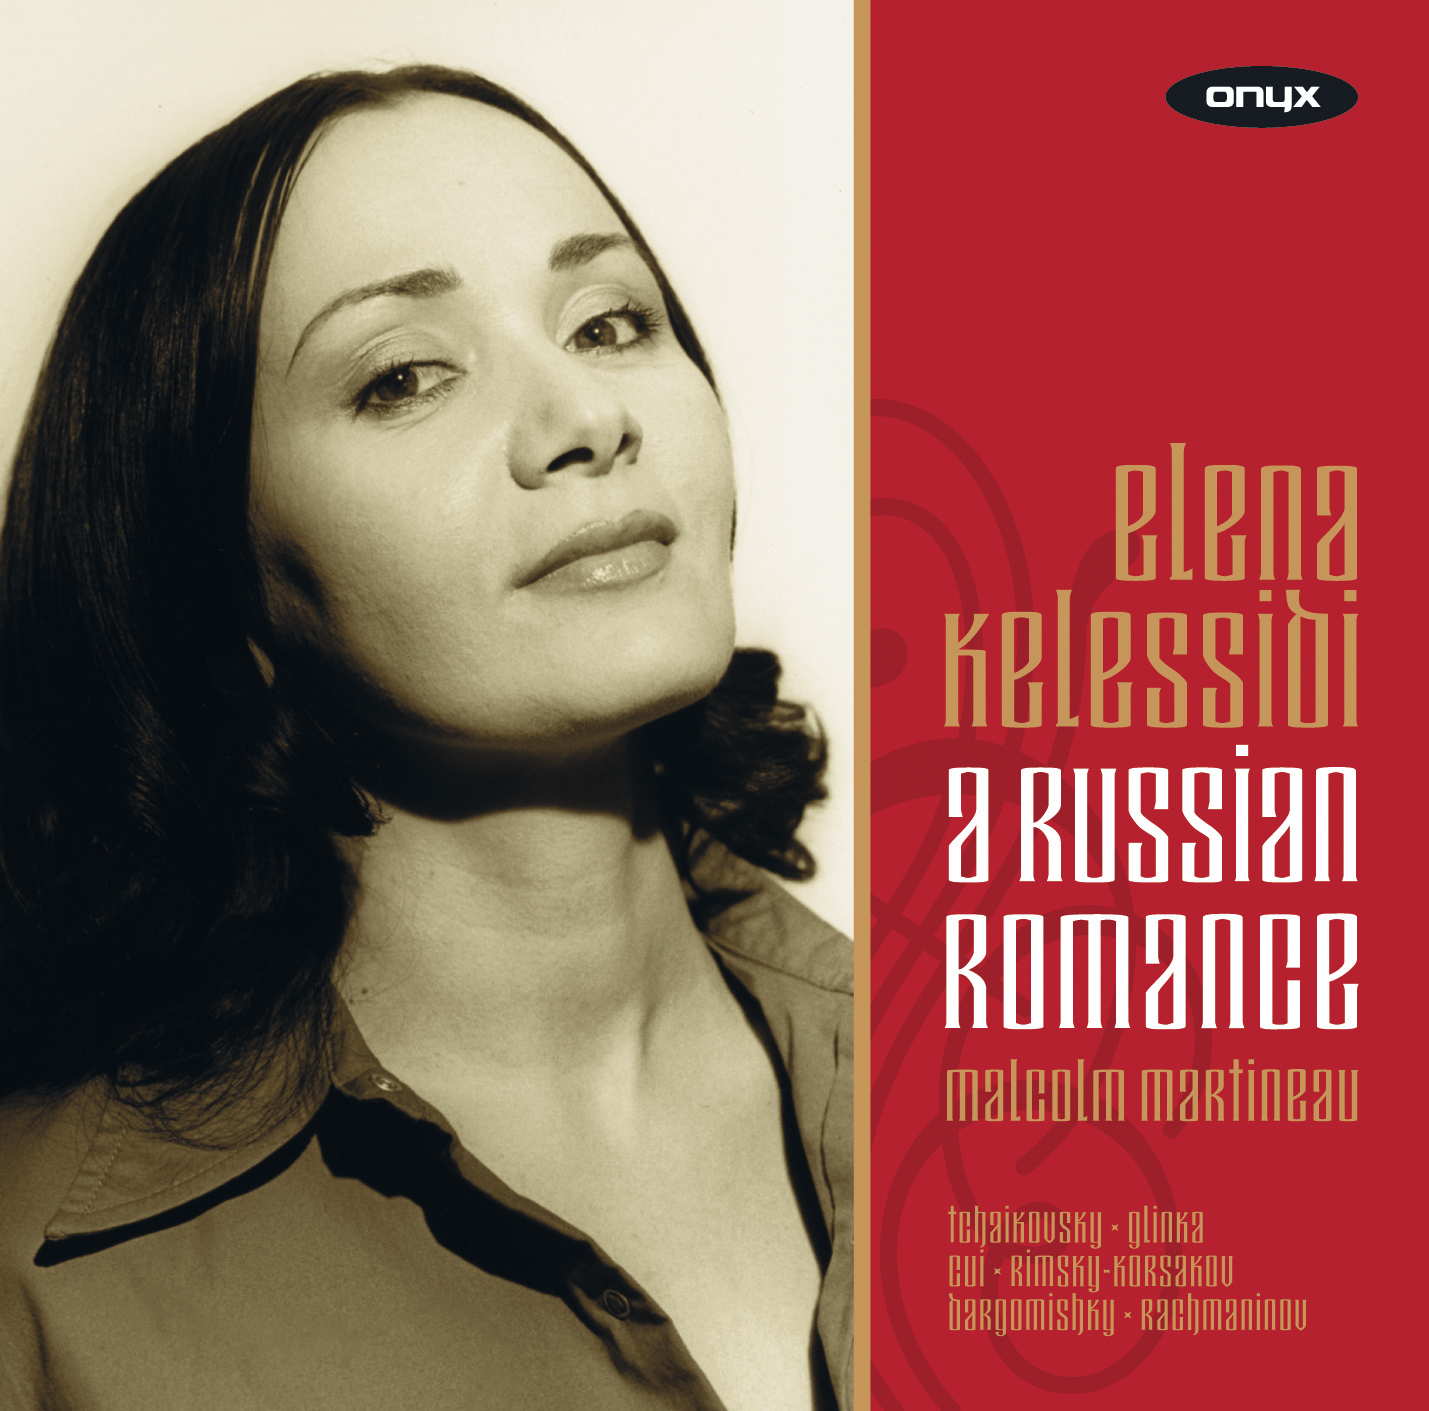 A Russian Romance: Cui, Glinka, Rachmaninov, Rimsky-Korsakov, Tchaikovsky